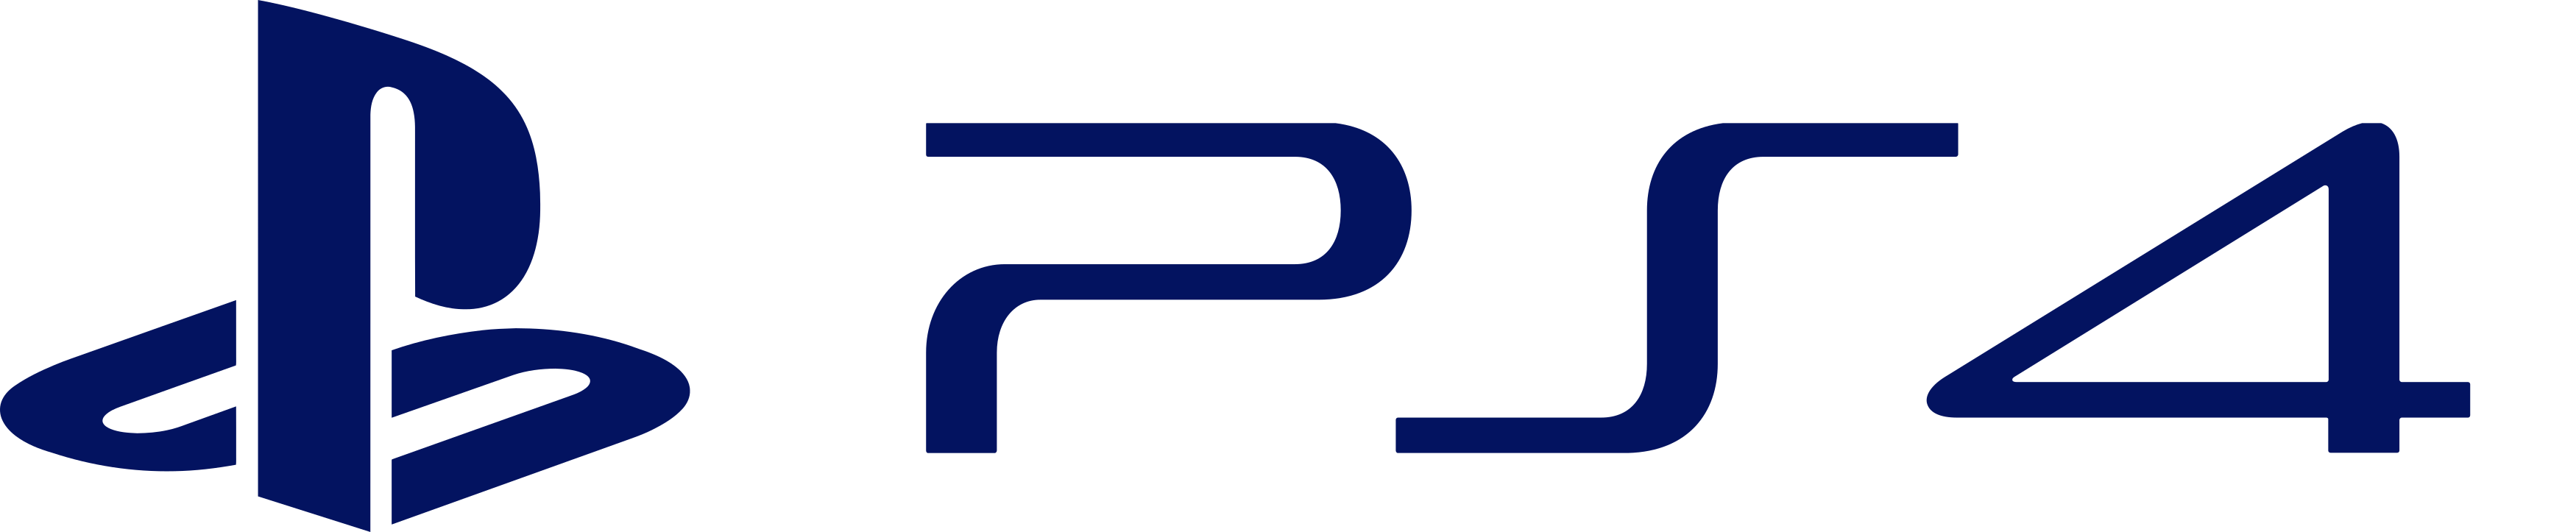 Resultado de imagem para playstation 4 logo